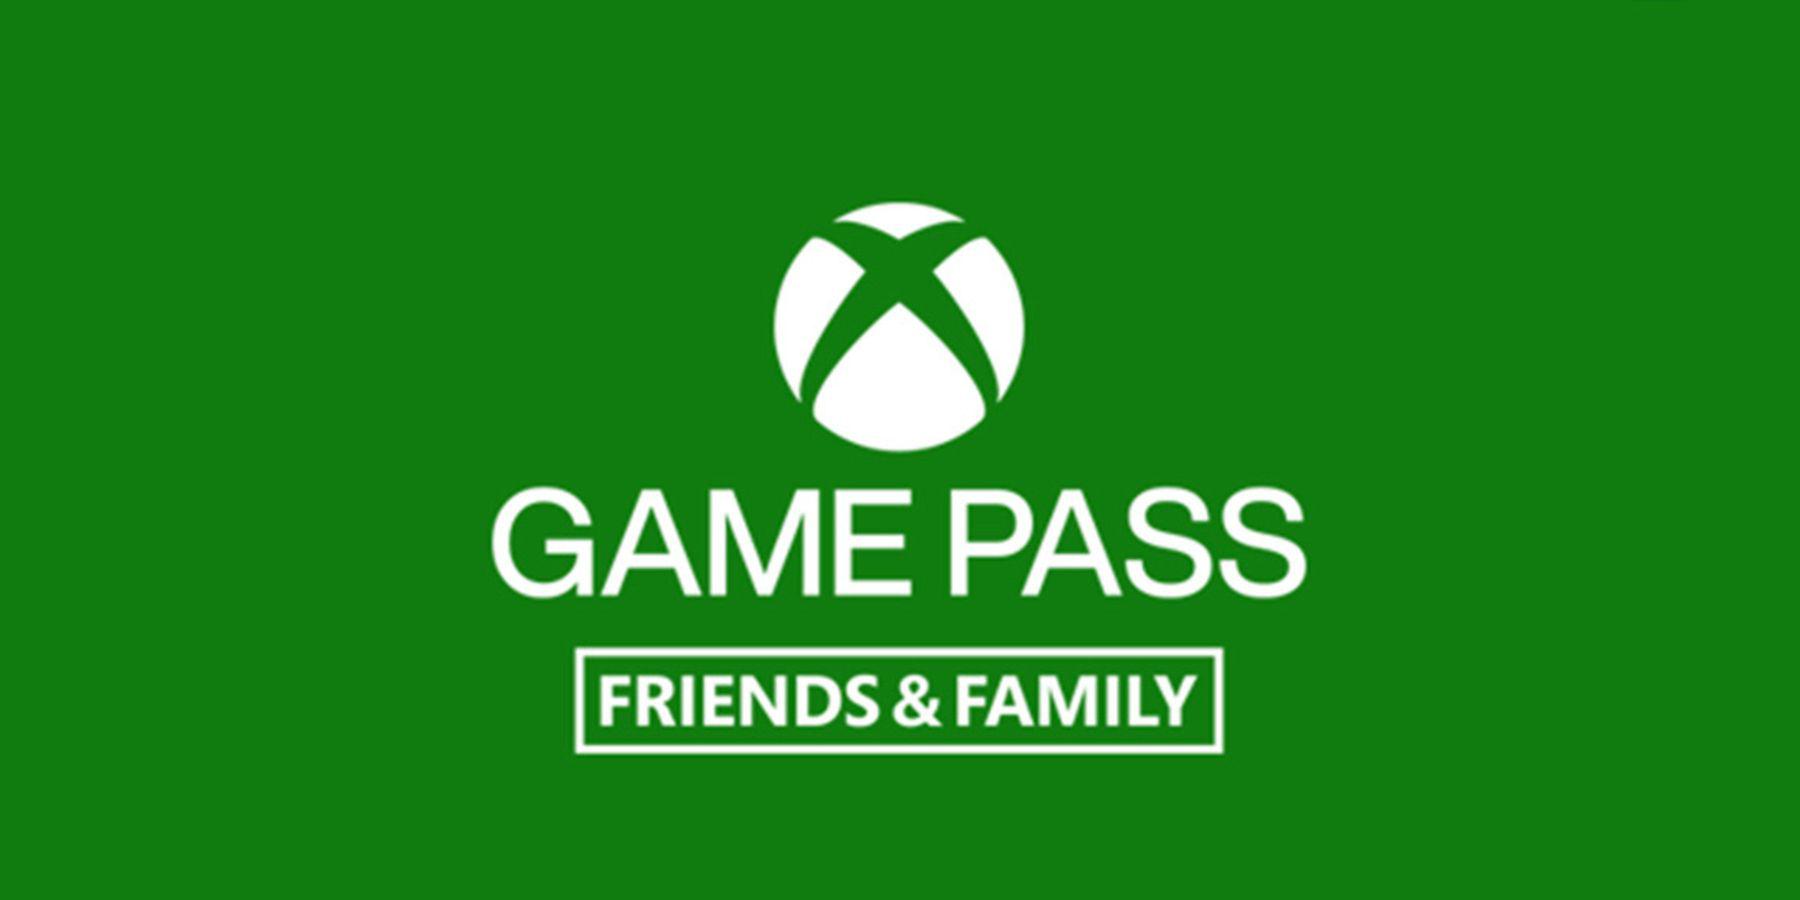 Plano familiar do Xbox Game Pass chega a mais 6 países